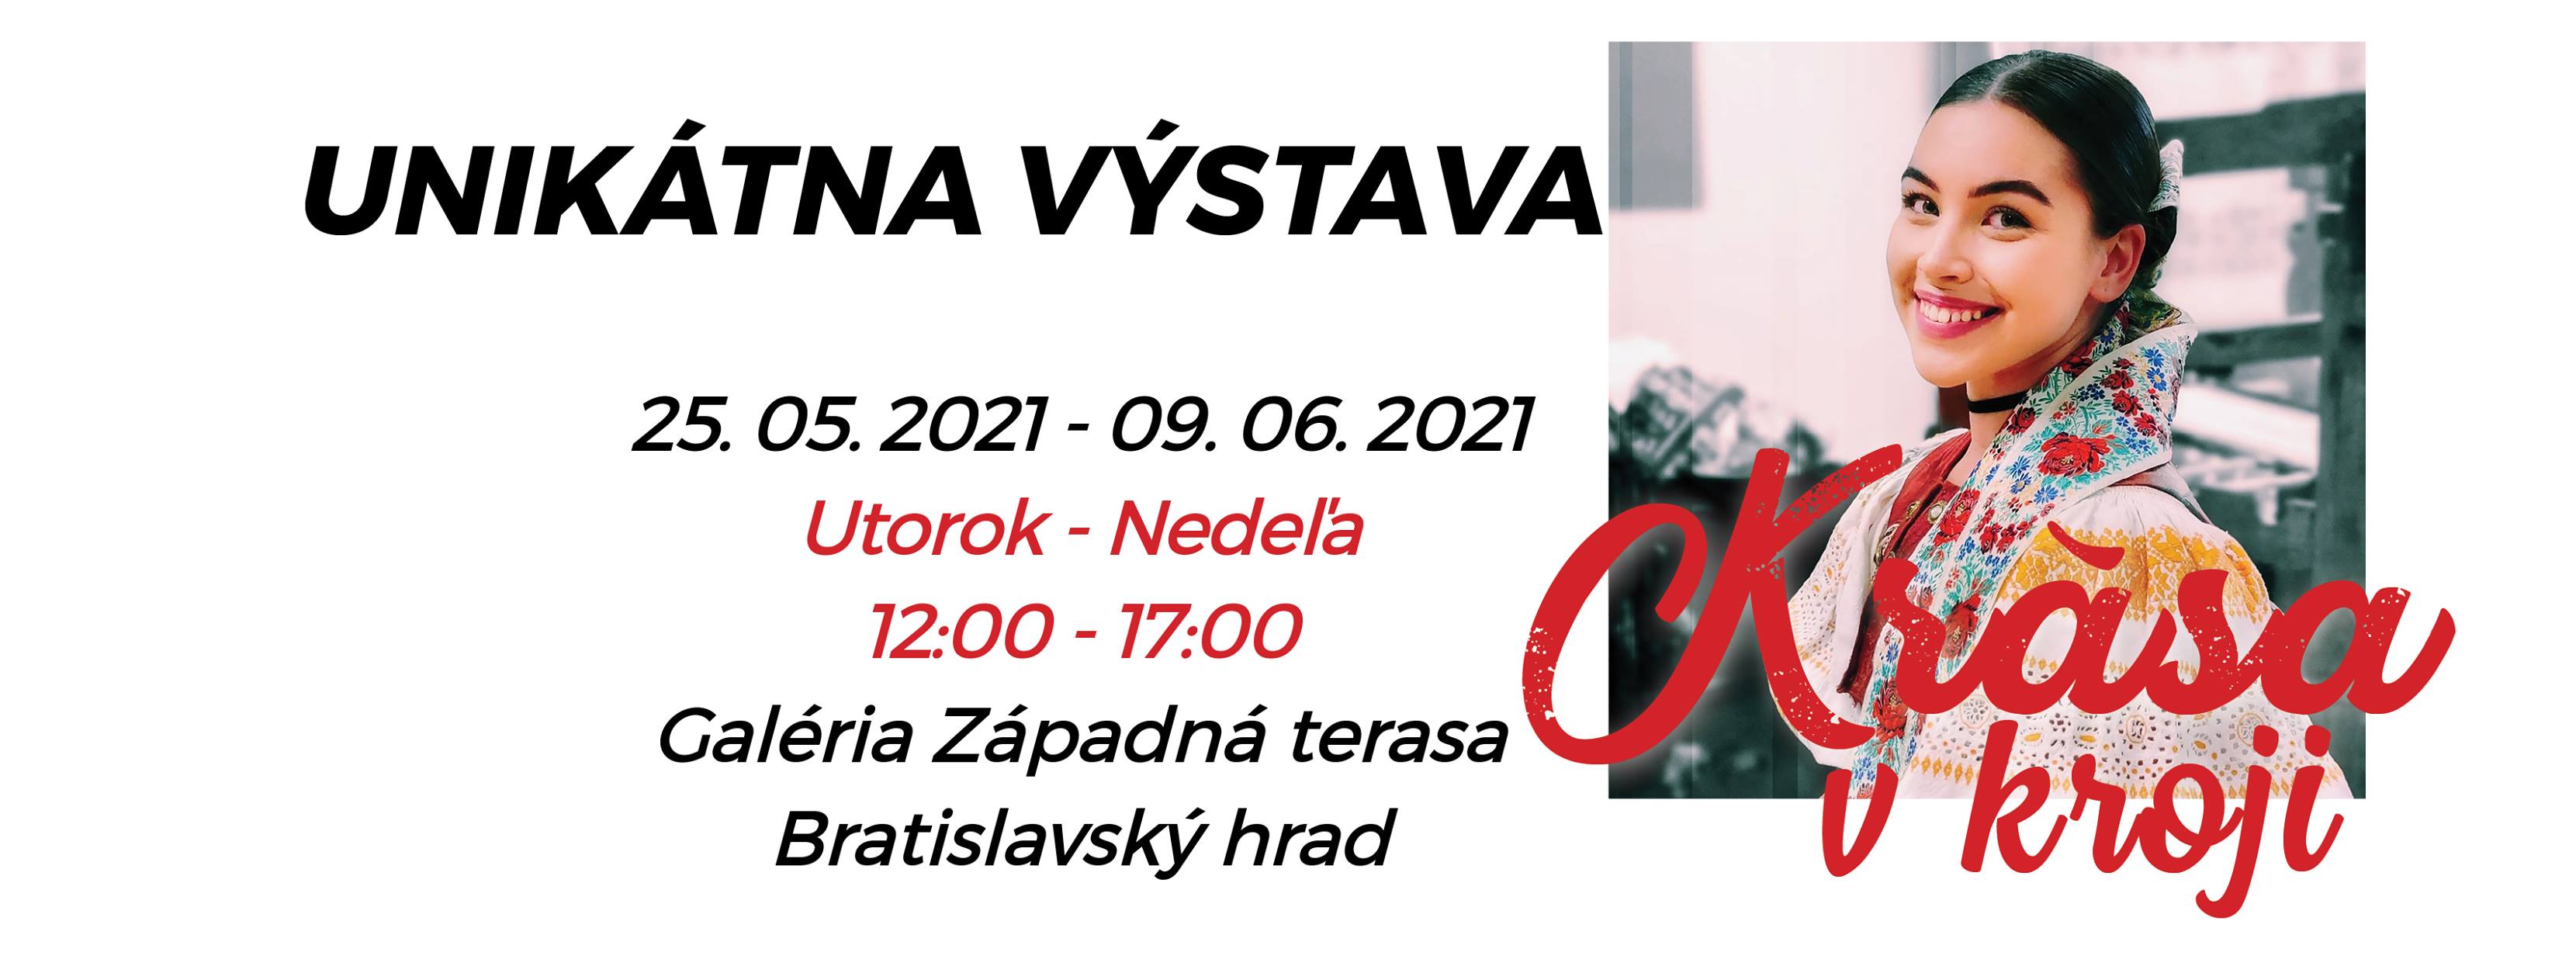 NOV - - - Krsa v kroji 2021 Bratislava  -  4. ronk uniktnej vstavy